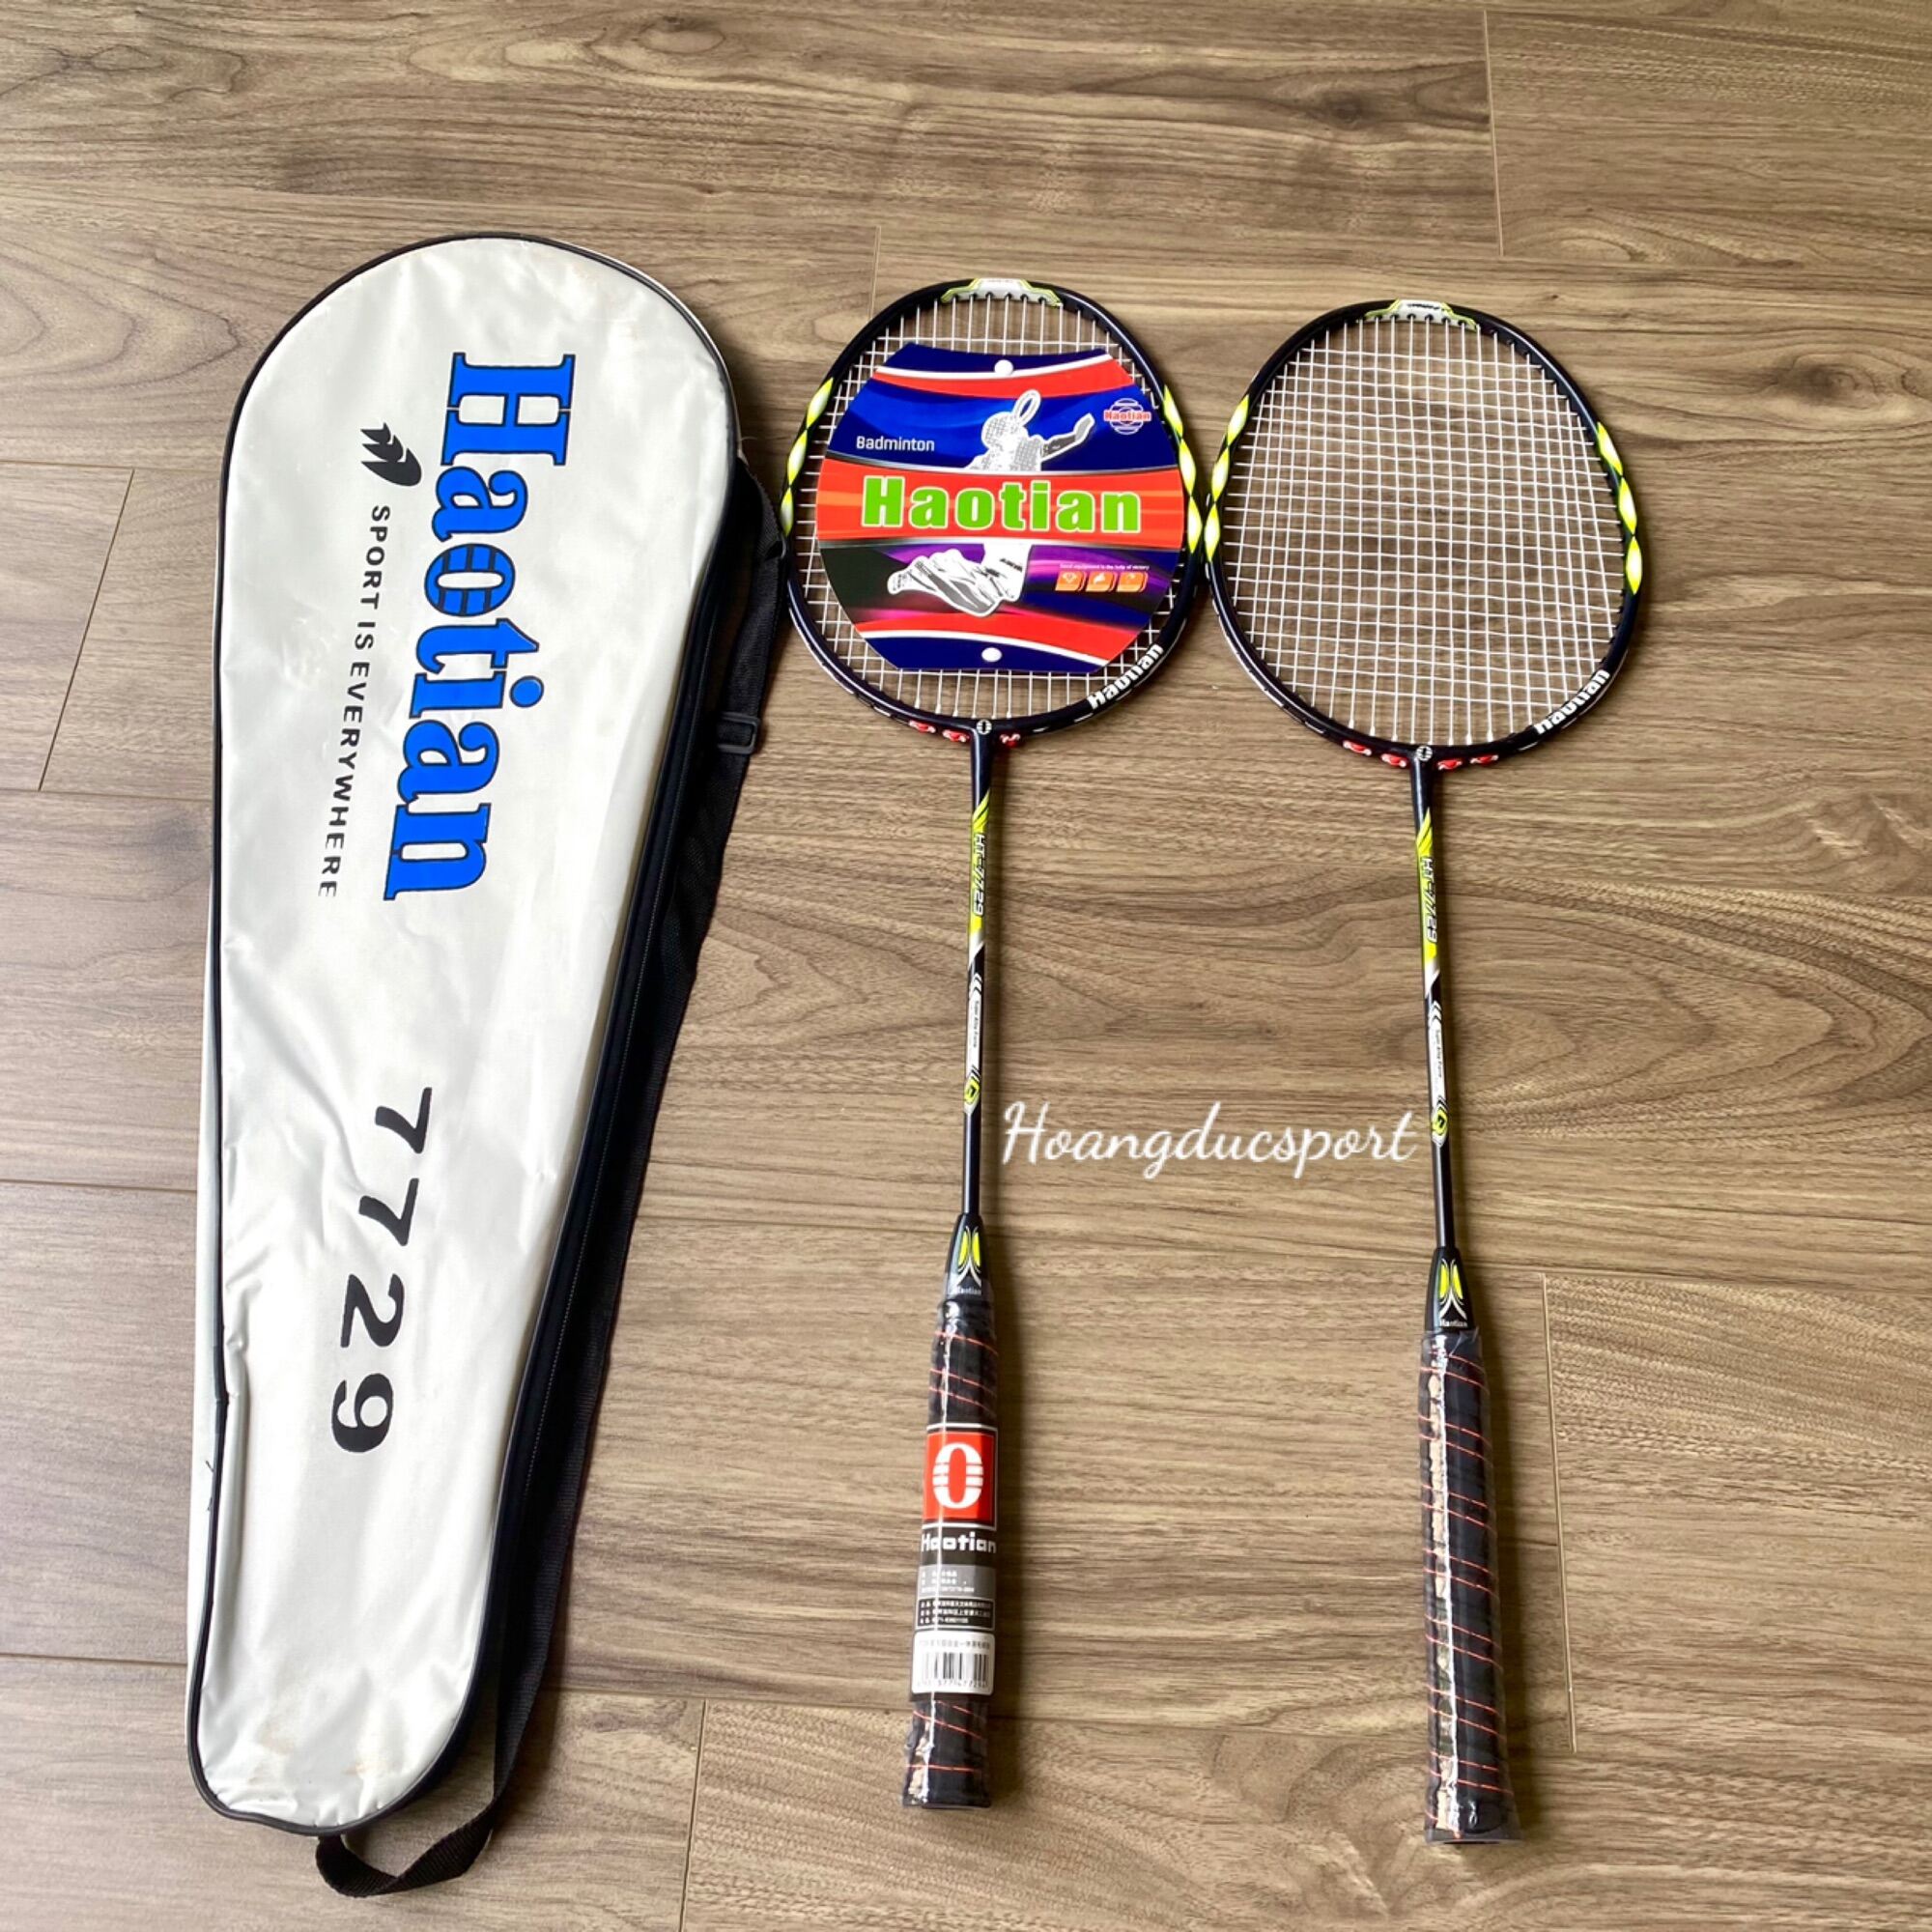 Đôi vợt cầu lông HAOTIAN 7729 chính hãng giá rẻ